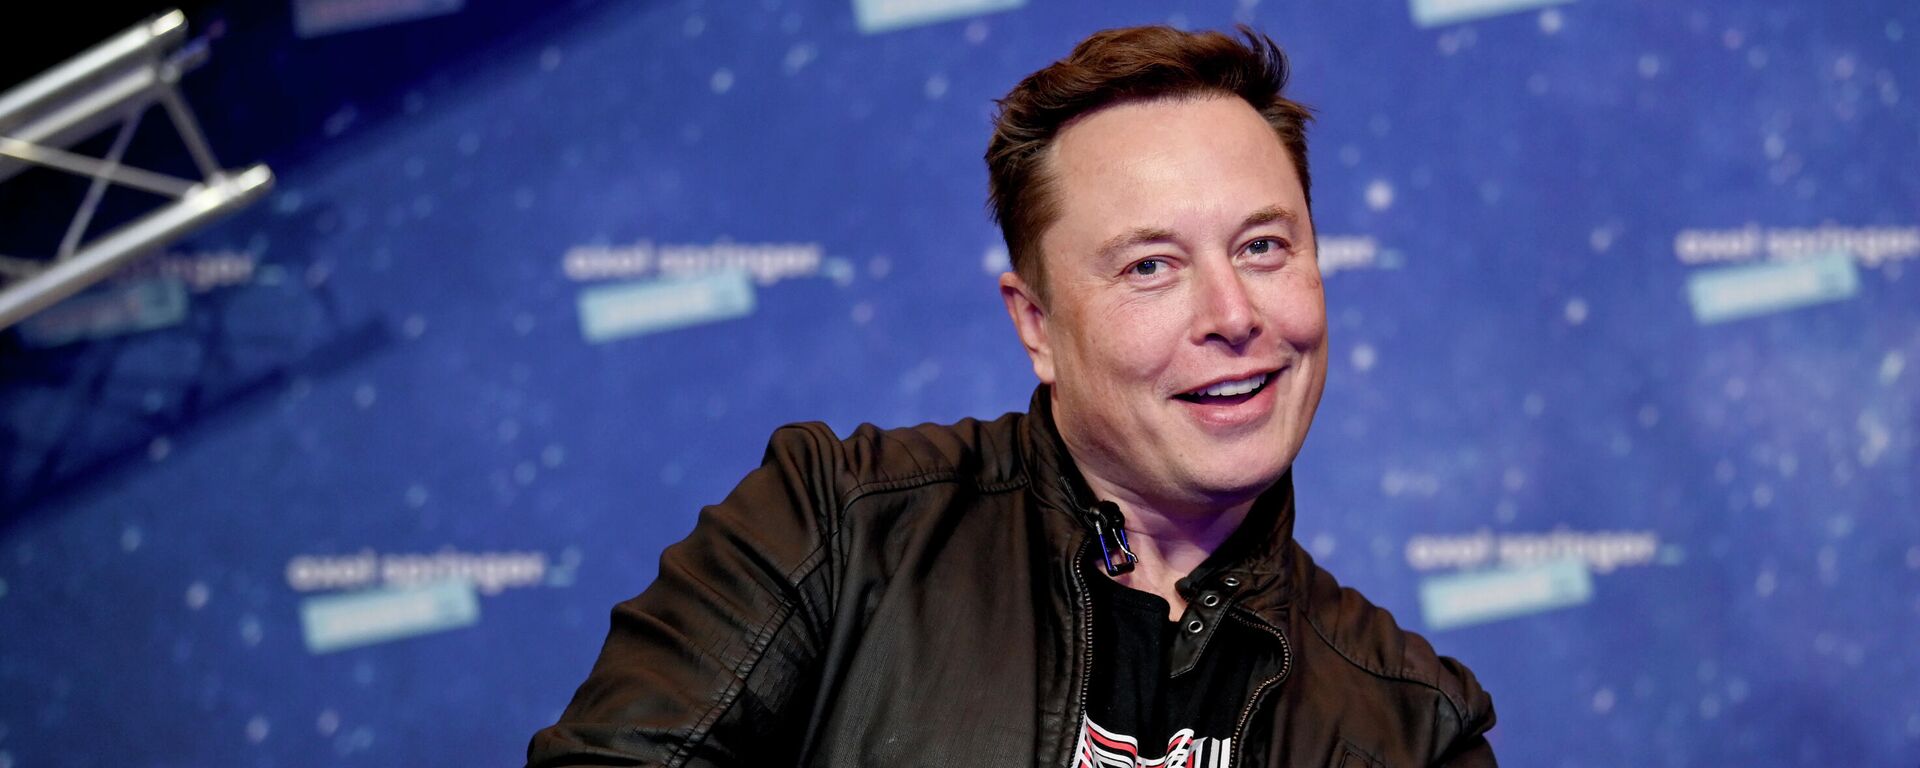 Elon Musk, CEO de Tesla y SpaceX - Sputnik Mundo, 1920, 30.06.2021